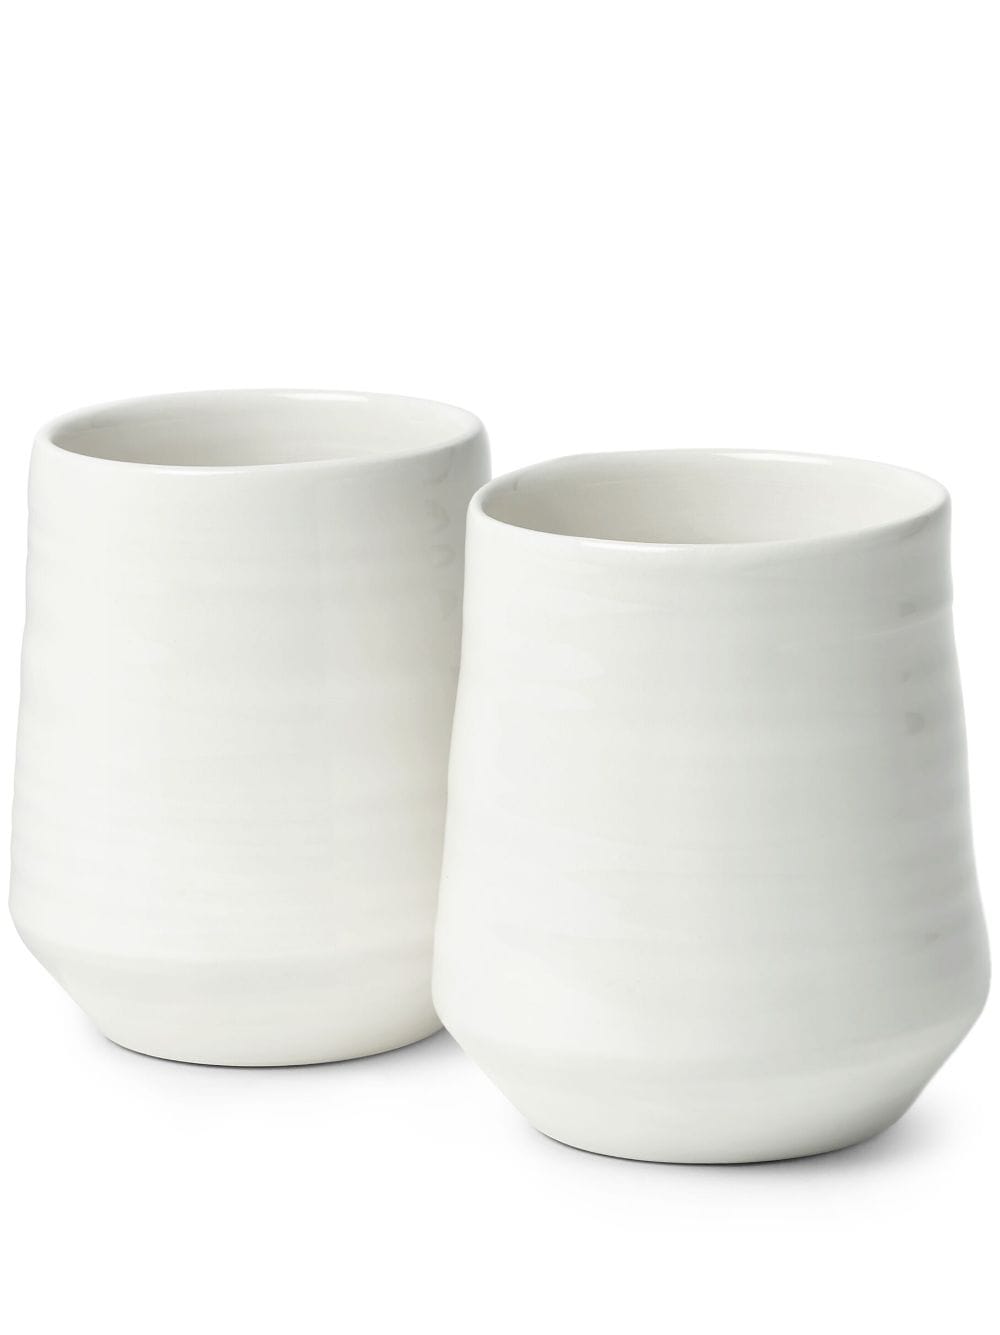 Brunello Cucinelli ceramic cups (set of two) - White von Brunello Cucinelli